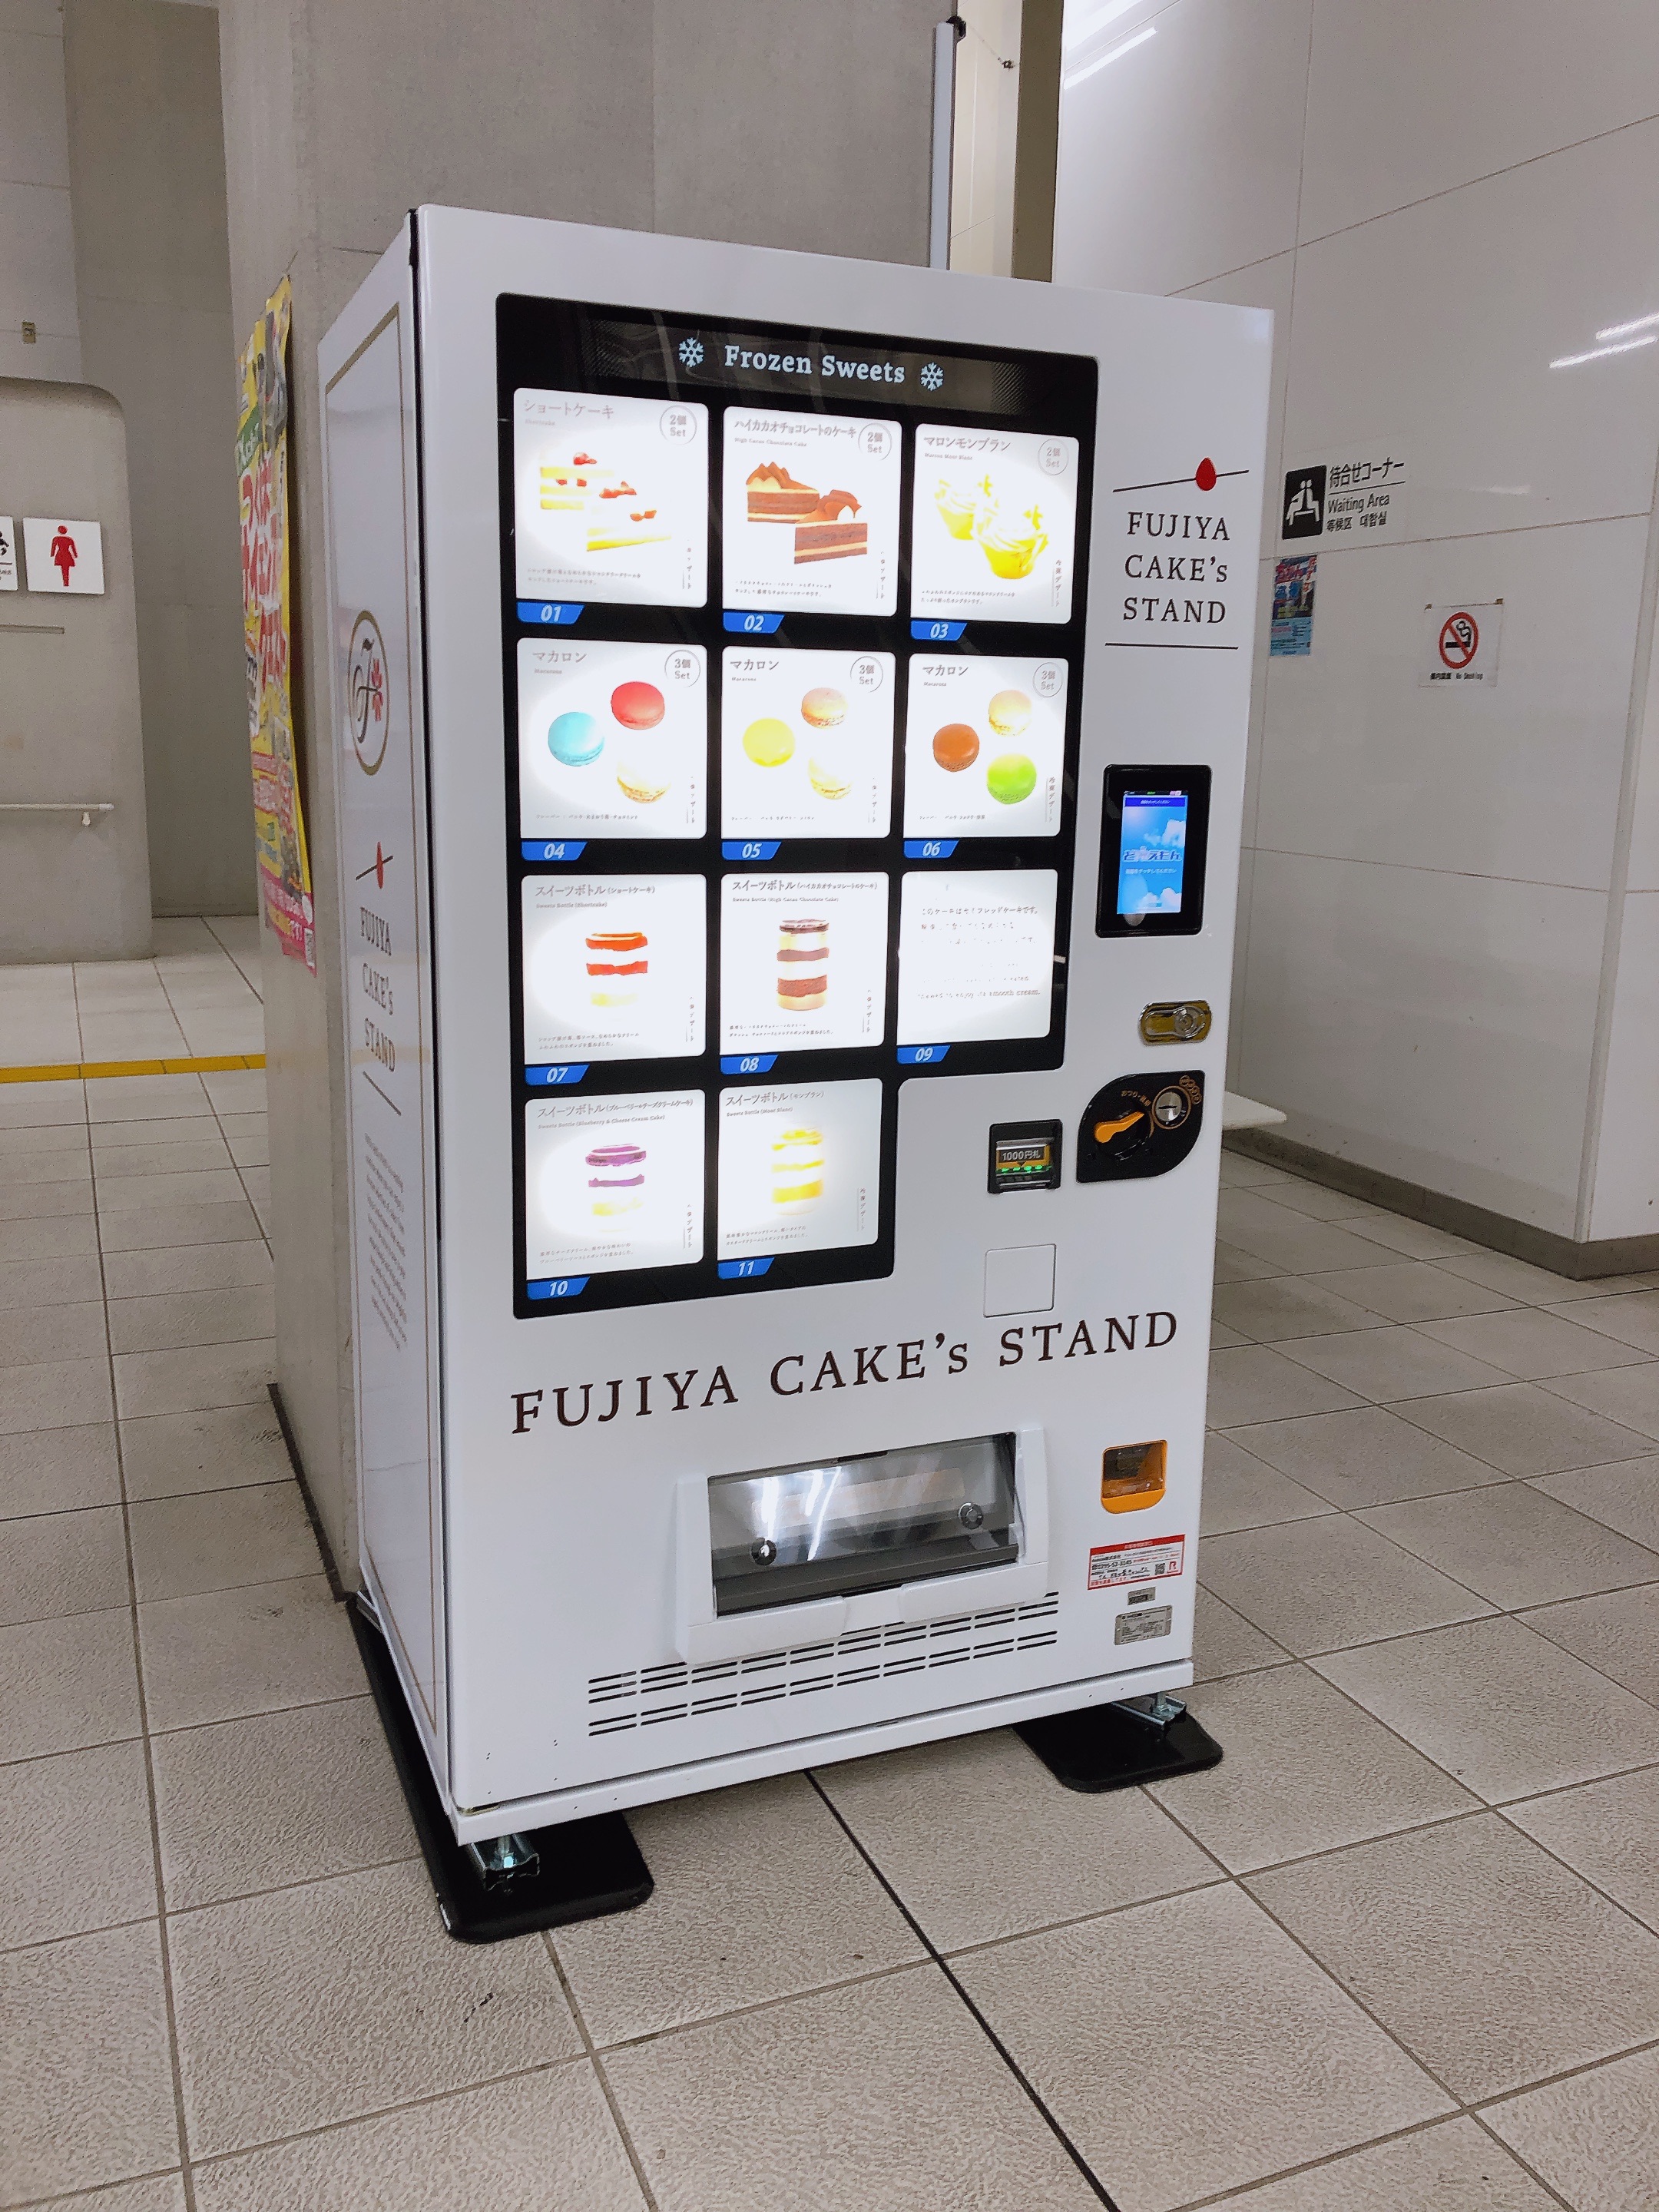 柏の葉キャンパス駅にフジヤのスイーツ販売機設置されてました🍰‼︎
冷凍品なので、一息つきたい時とか子どもと食べる用に買っておけていいですね☺️☕️
誰かもうすでに食べたことある人、お味の感想教えて下さい😉✨の画像